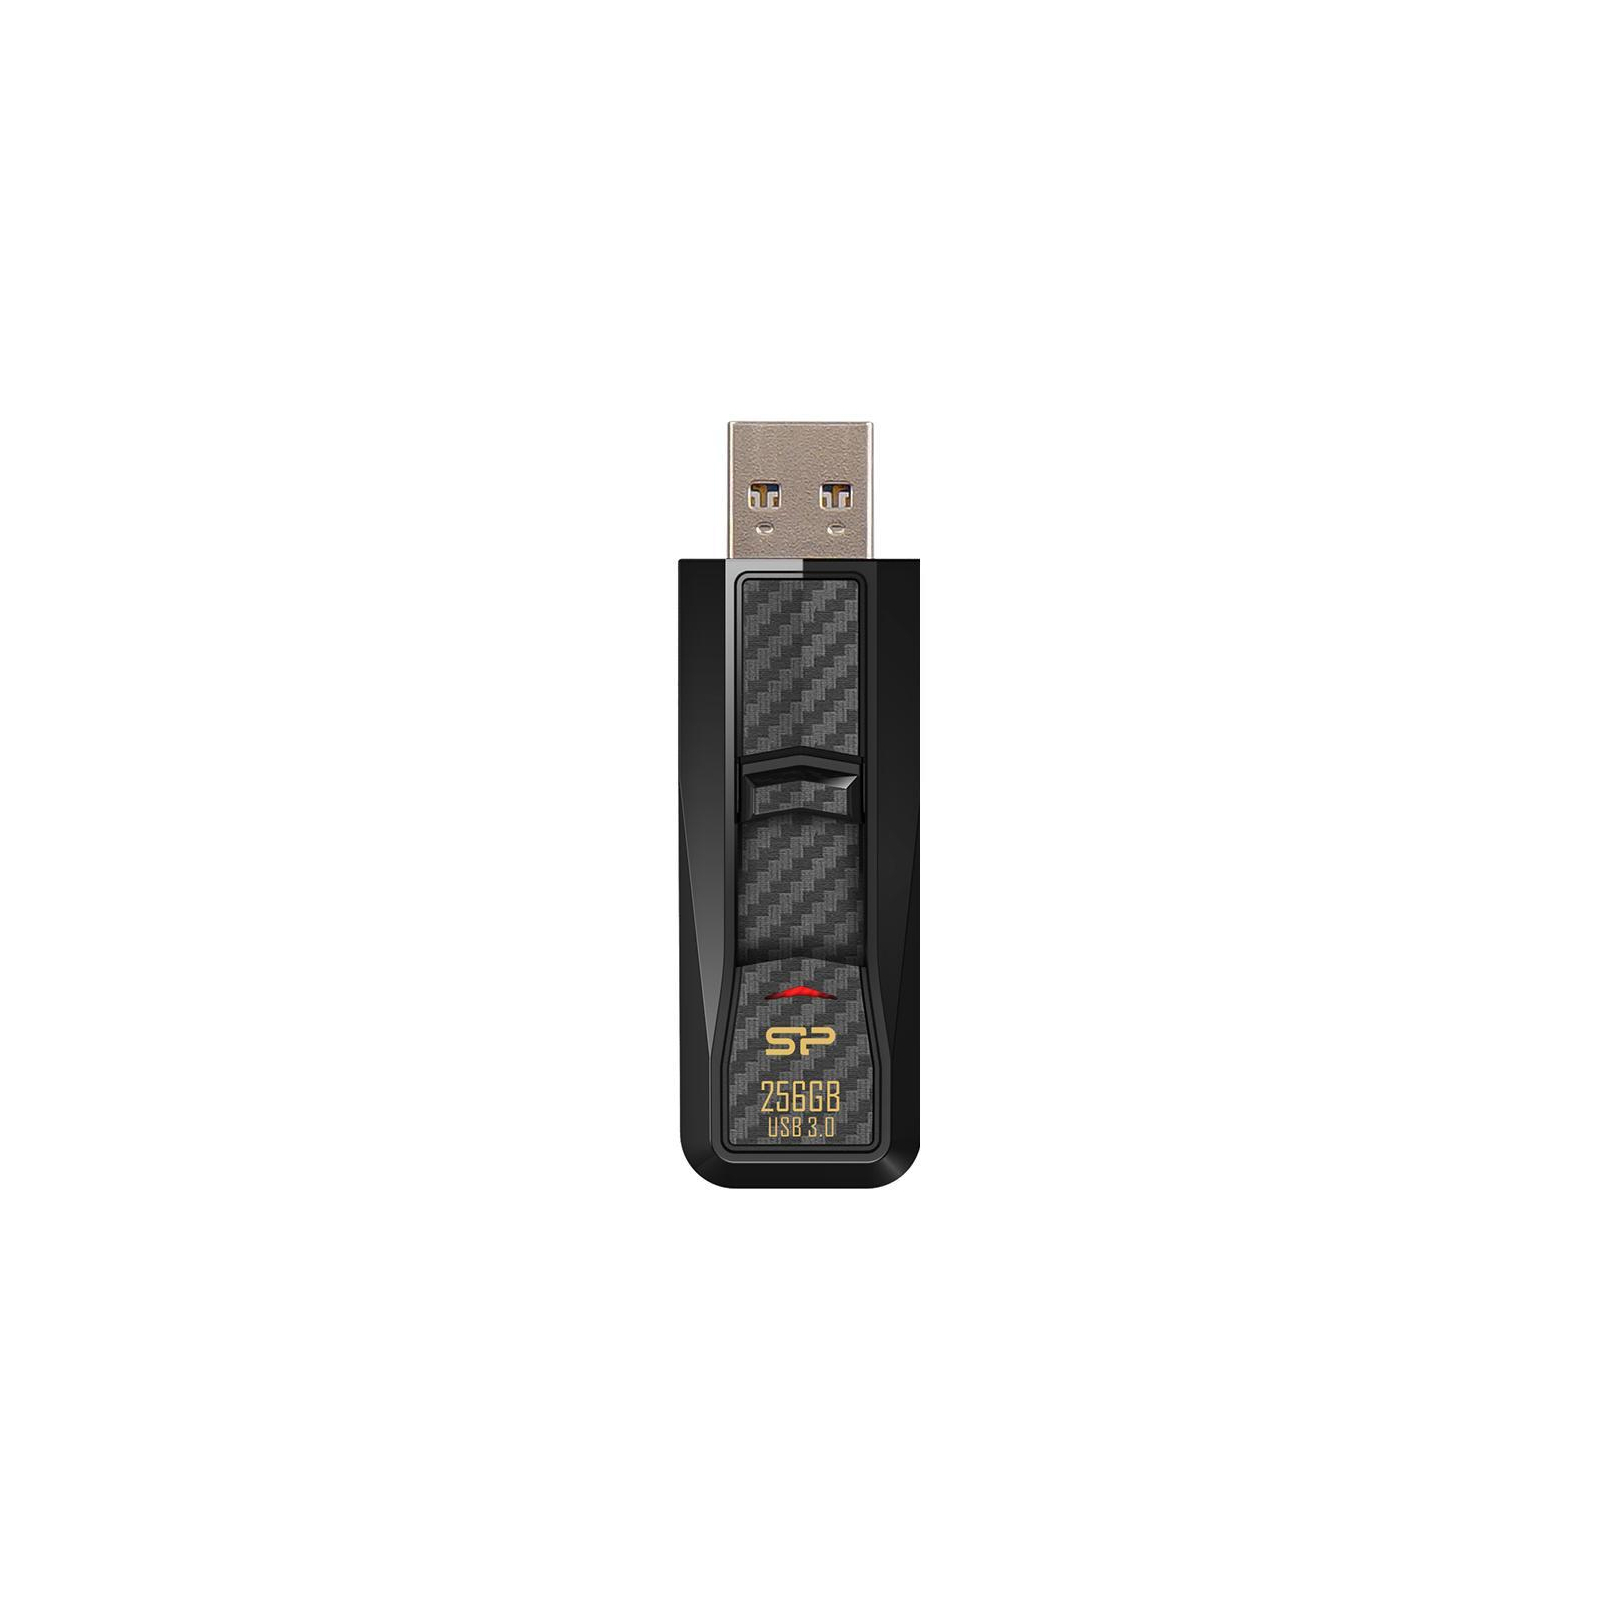 USB флеш накопитель Silicon Power Blaze B50 256 Gb USB 3.0 Red (SP256GBUF3B50V1R) изображение 3